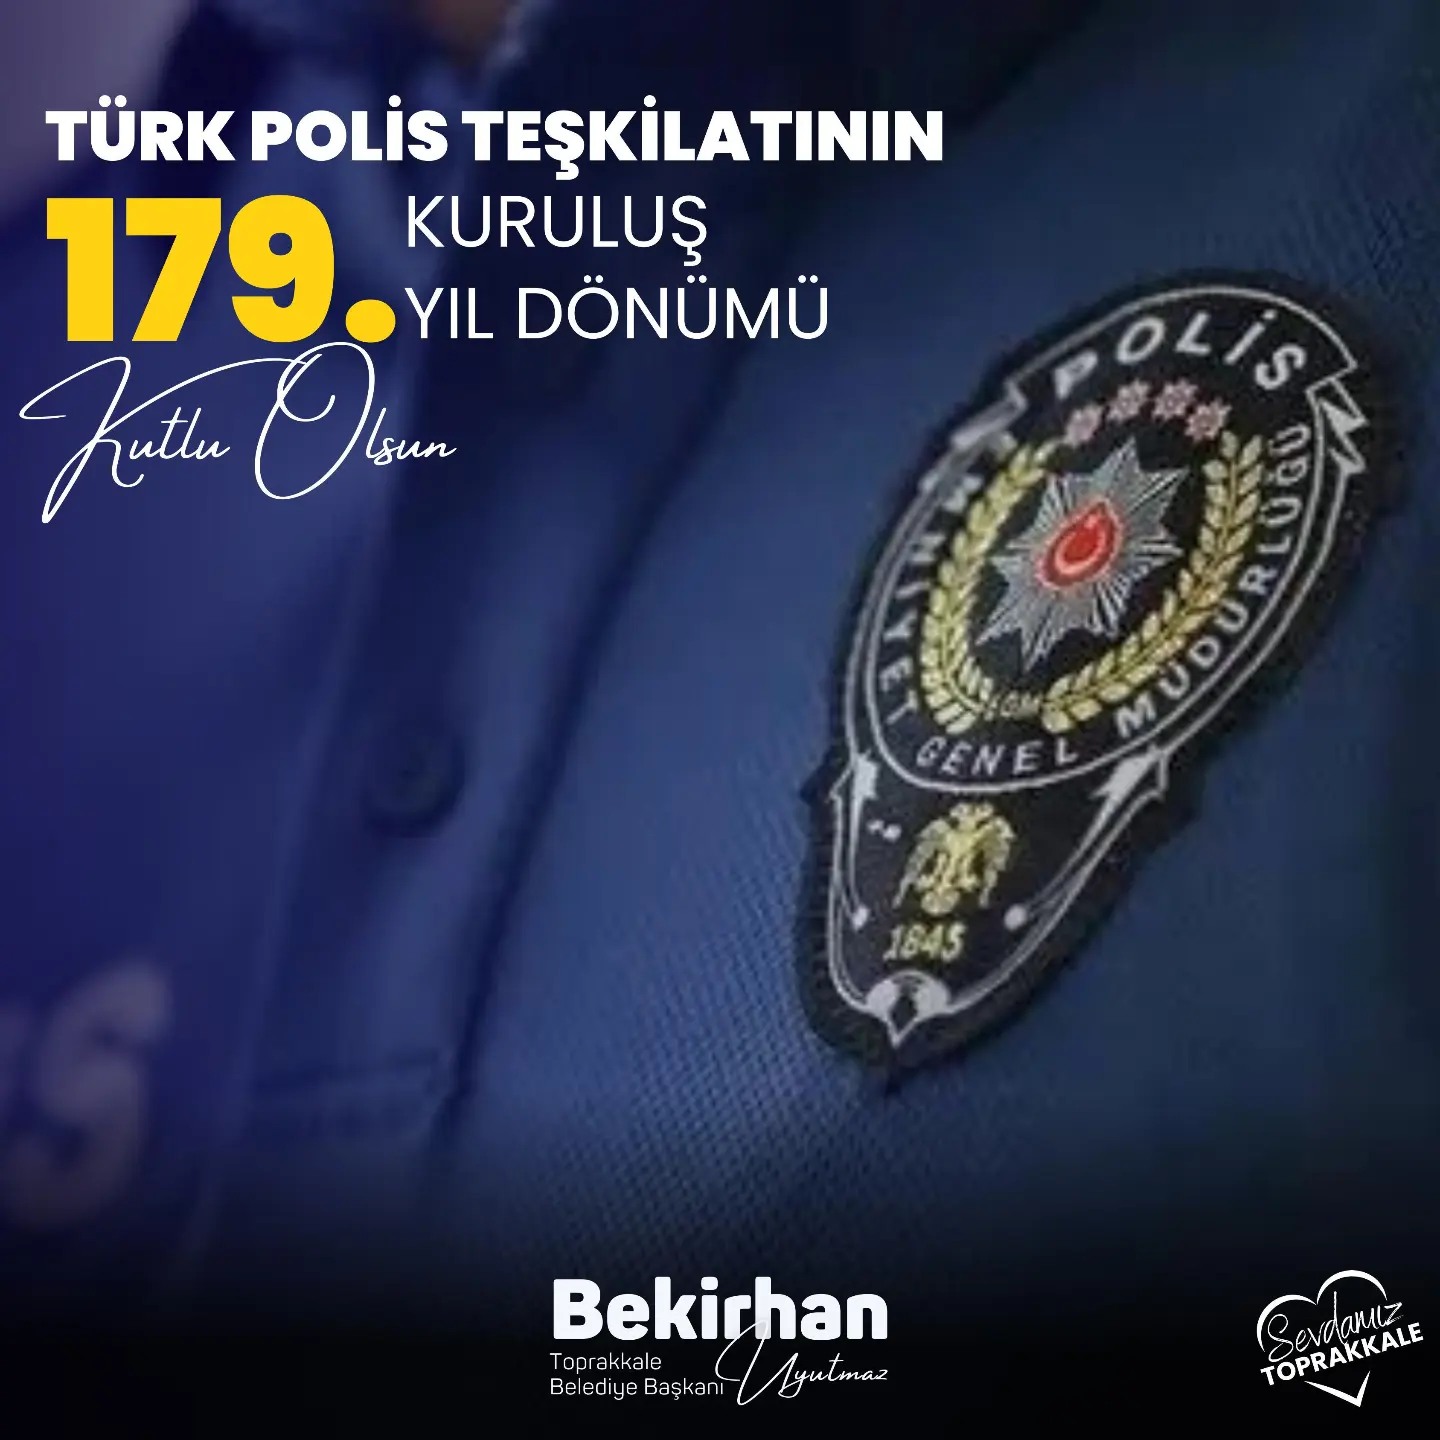 Toprakkale Belediye Başkanı Bekirhan Uyutmaz'dan Türk Polis Teşkilatı'na Övgü Dolu Kutlama